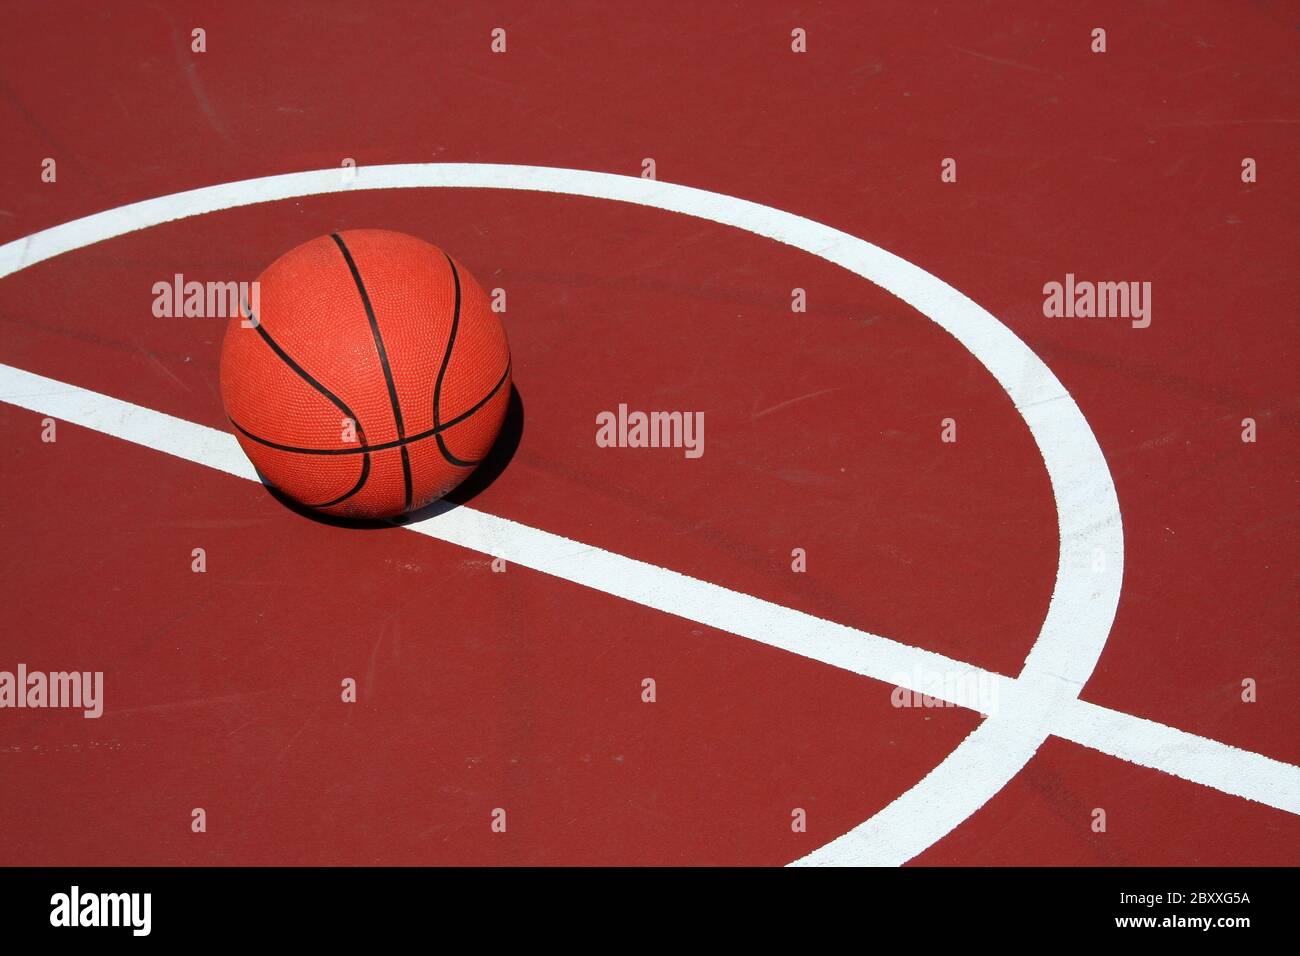 Ein Basketball am Center Court auf einem roten Hof Stockfoto